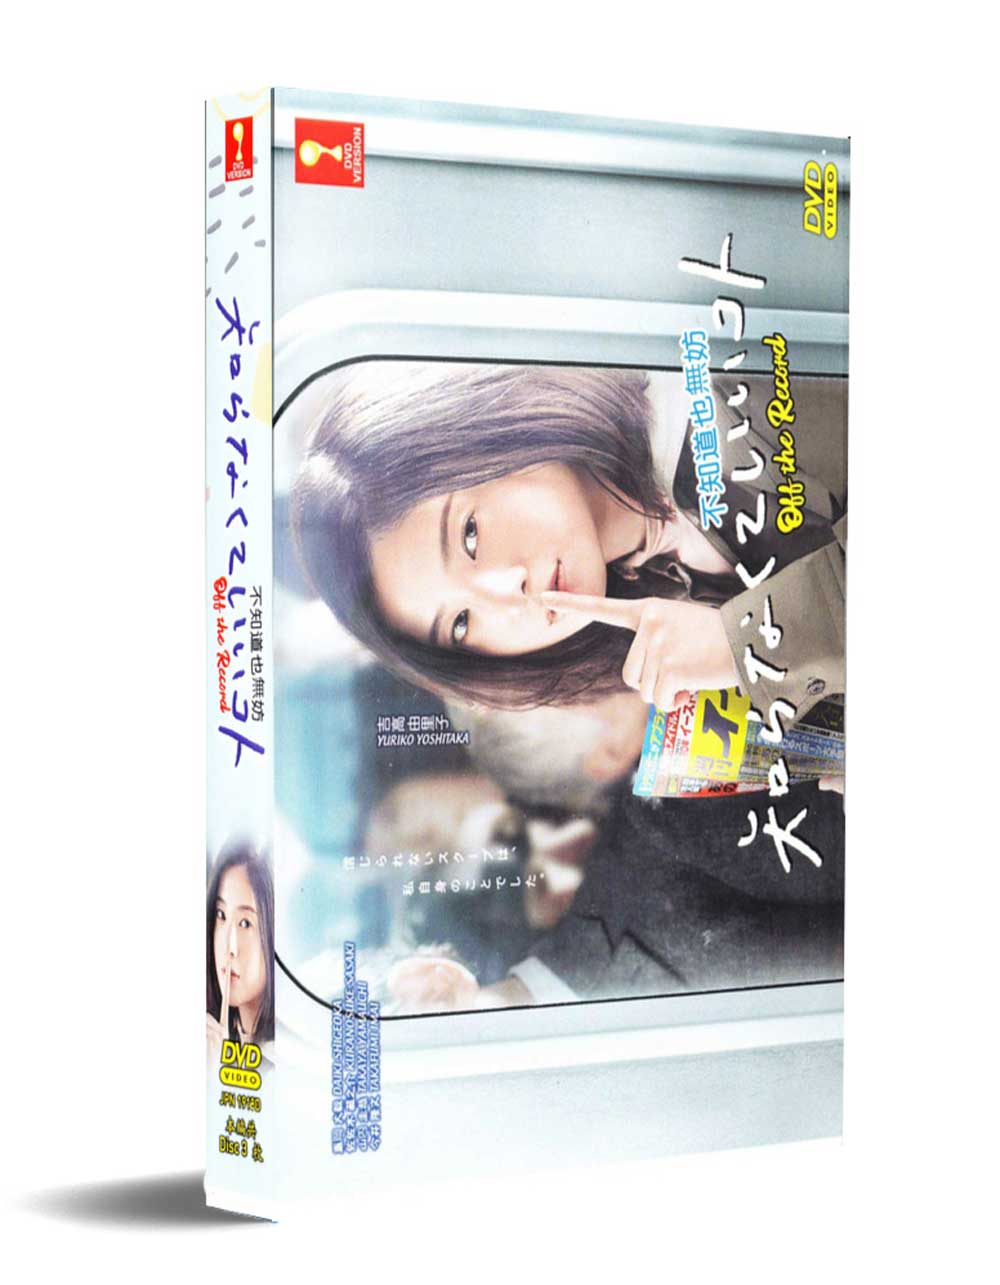 知らなくていいコト (DVD) (2020) 日本TVドラマ